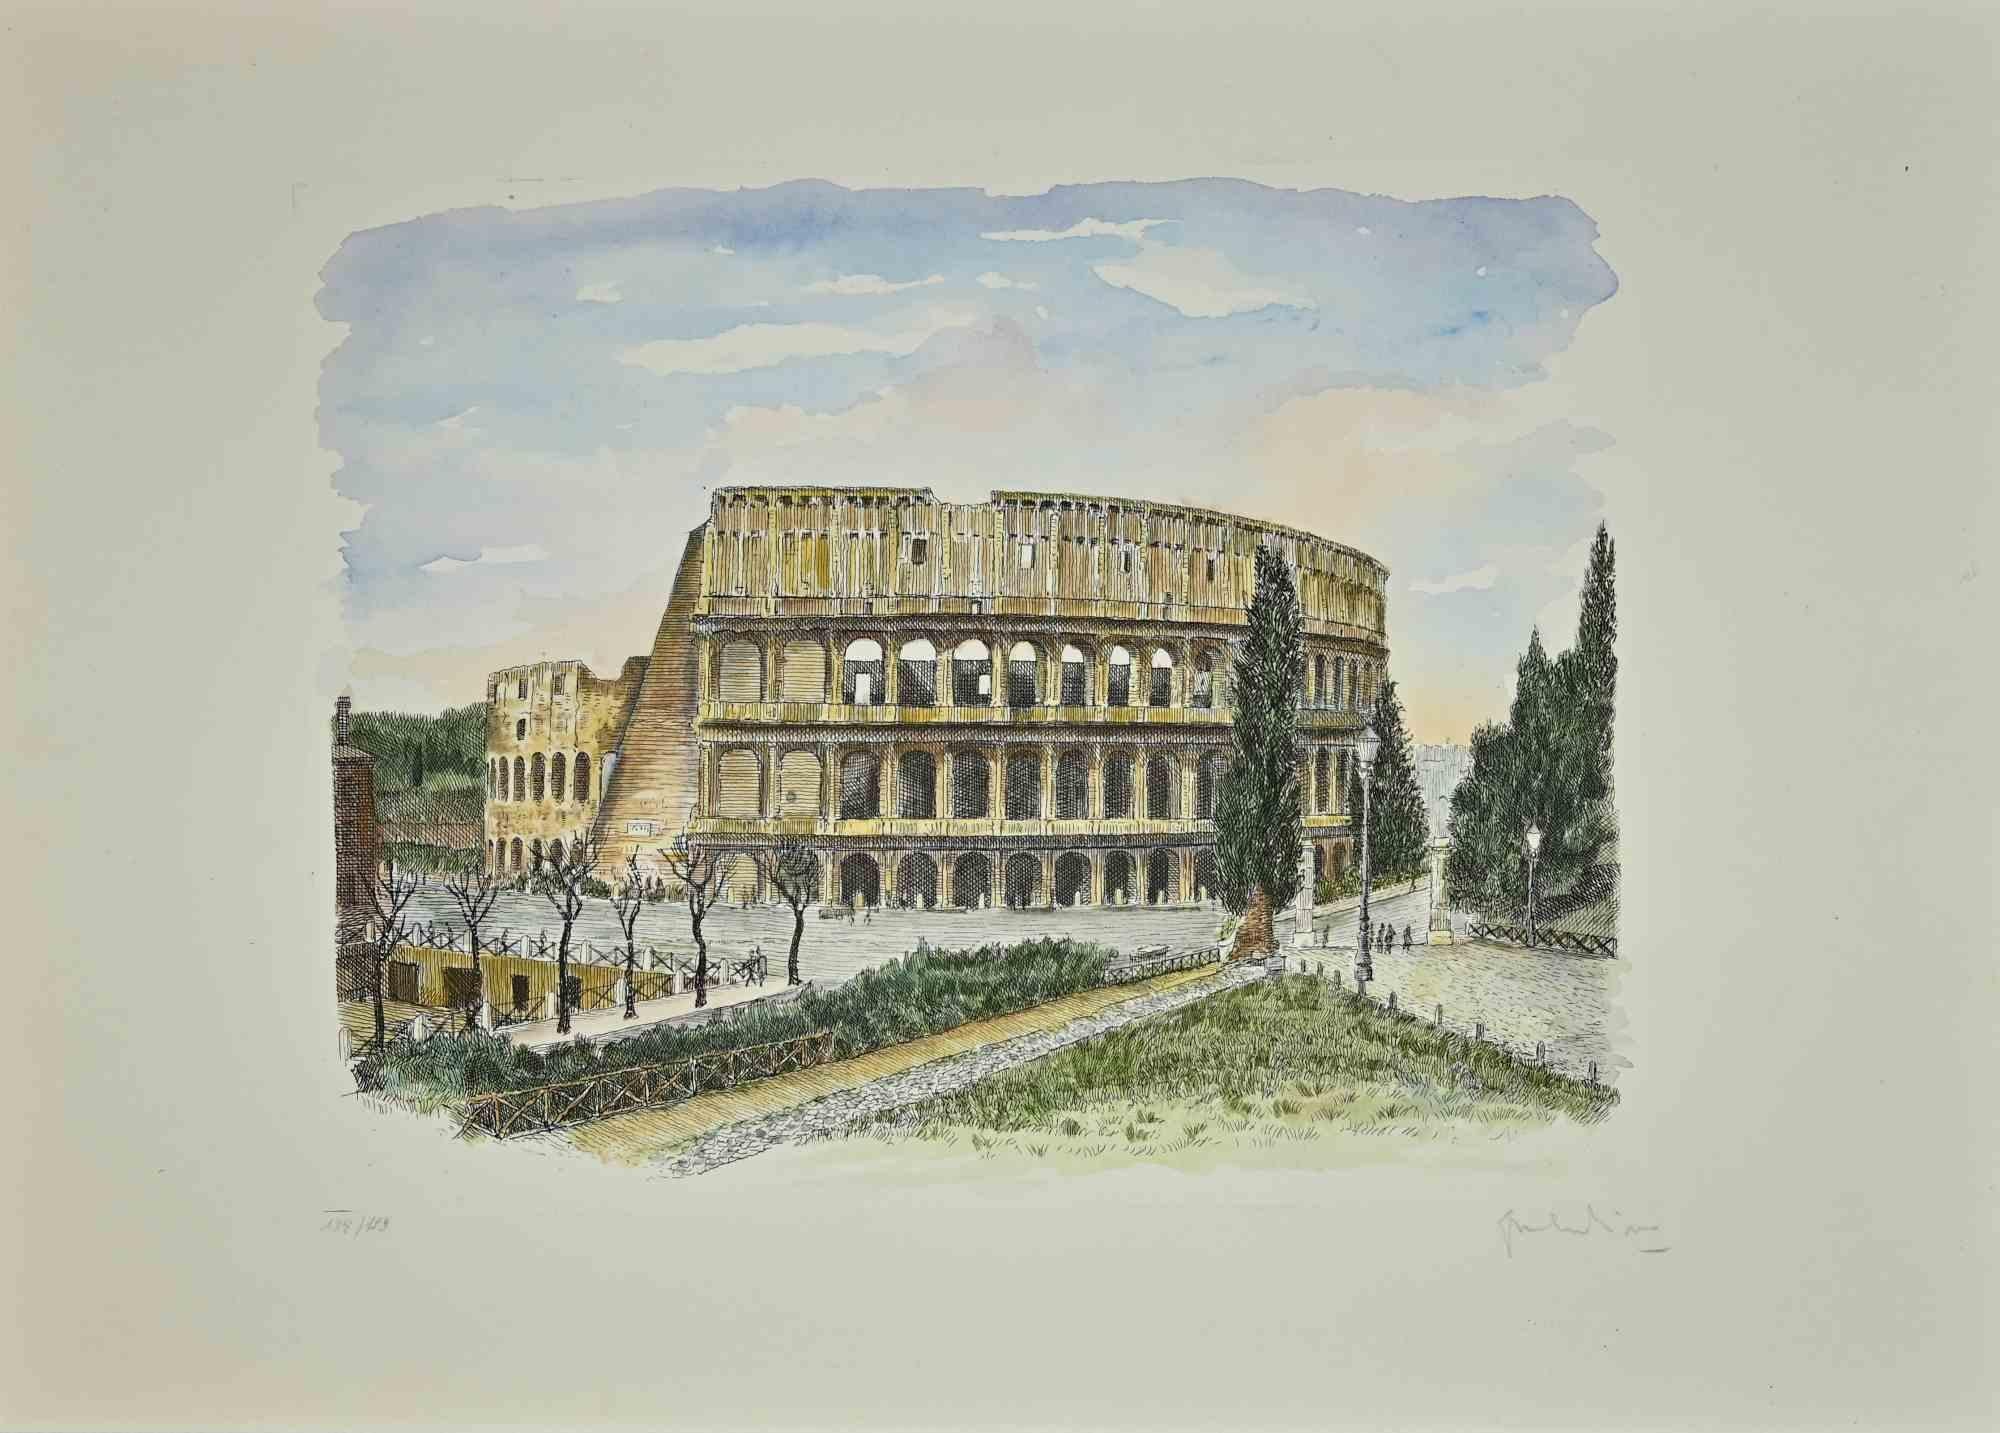 Colosseum ist ein Kunstwerk, das von Giuseppe Malandrino in den 1970er Jahren realisiert wurde.

Gemischtfarbige Radierung.

Am unteren Rand handsigniert und nummeriert.

Ausgabe von 138/199.